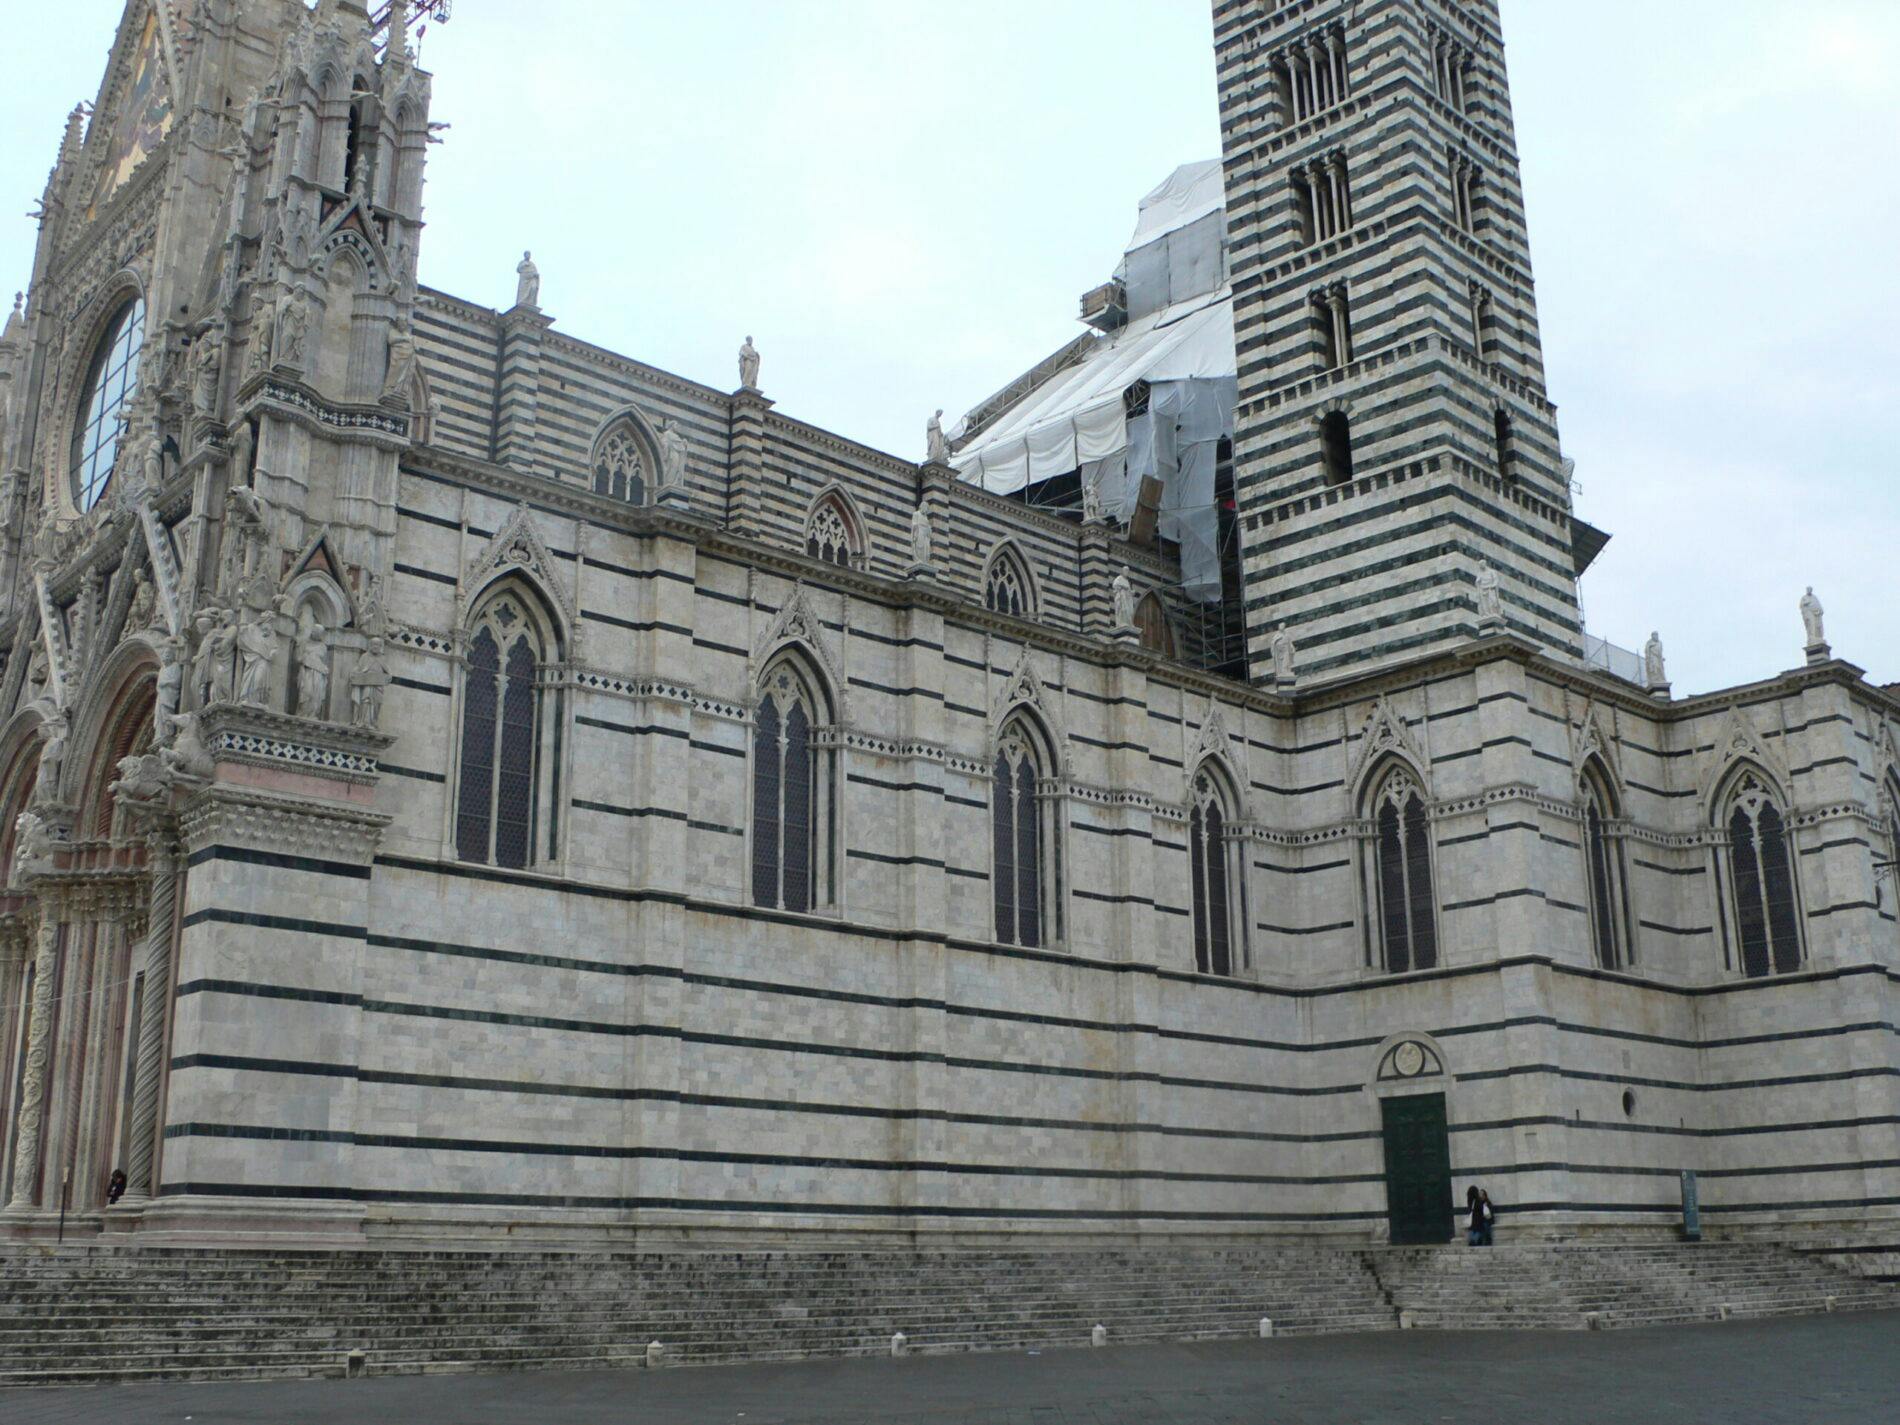 Facciate delle navate del Duomo di Siena